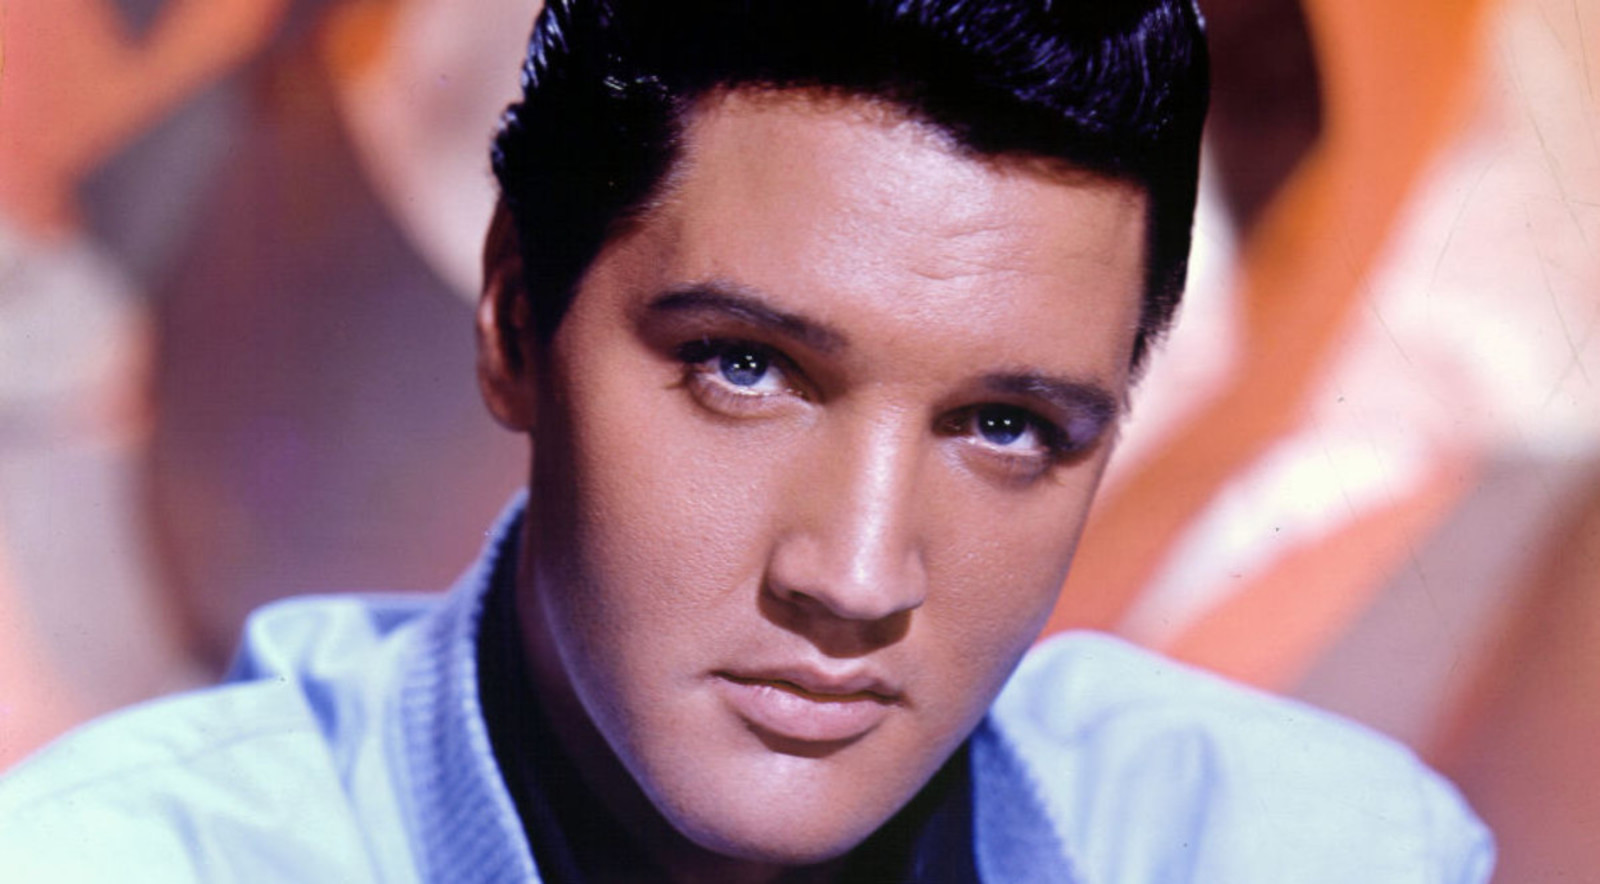 Estilo. Elvis Presley tenía una voz superdotada, un estilo único interpretativo y continúa siendo un ídolo de masas. (ESPECIAL)